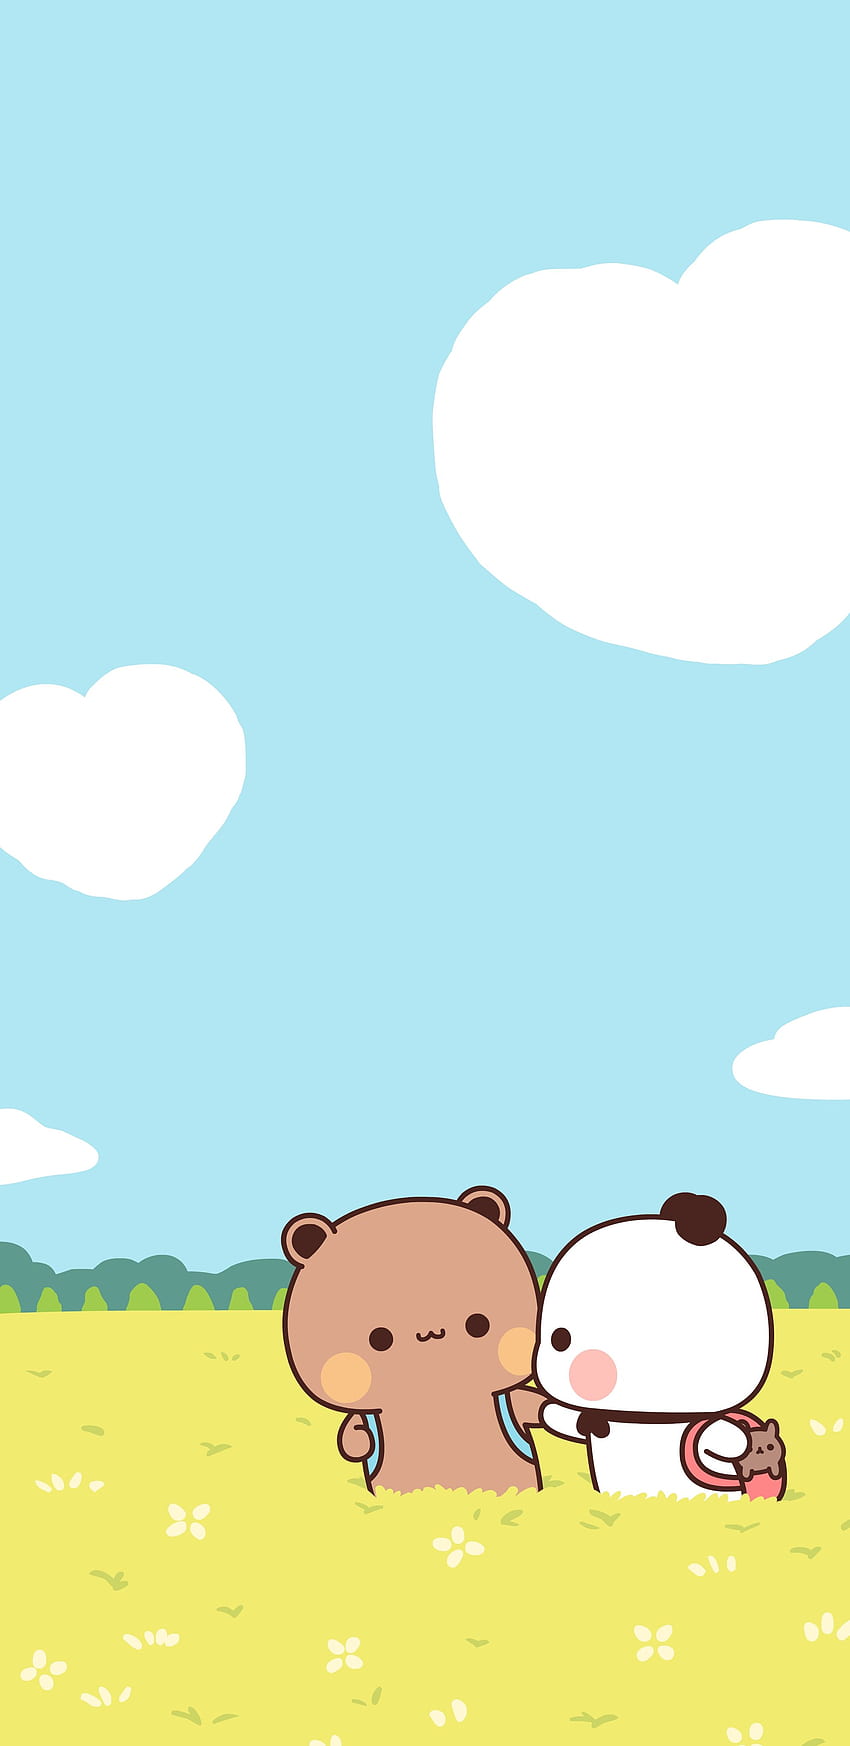 Teddy bear cartoon HD wallpapers | Pxfuel